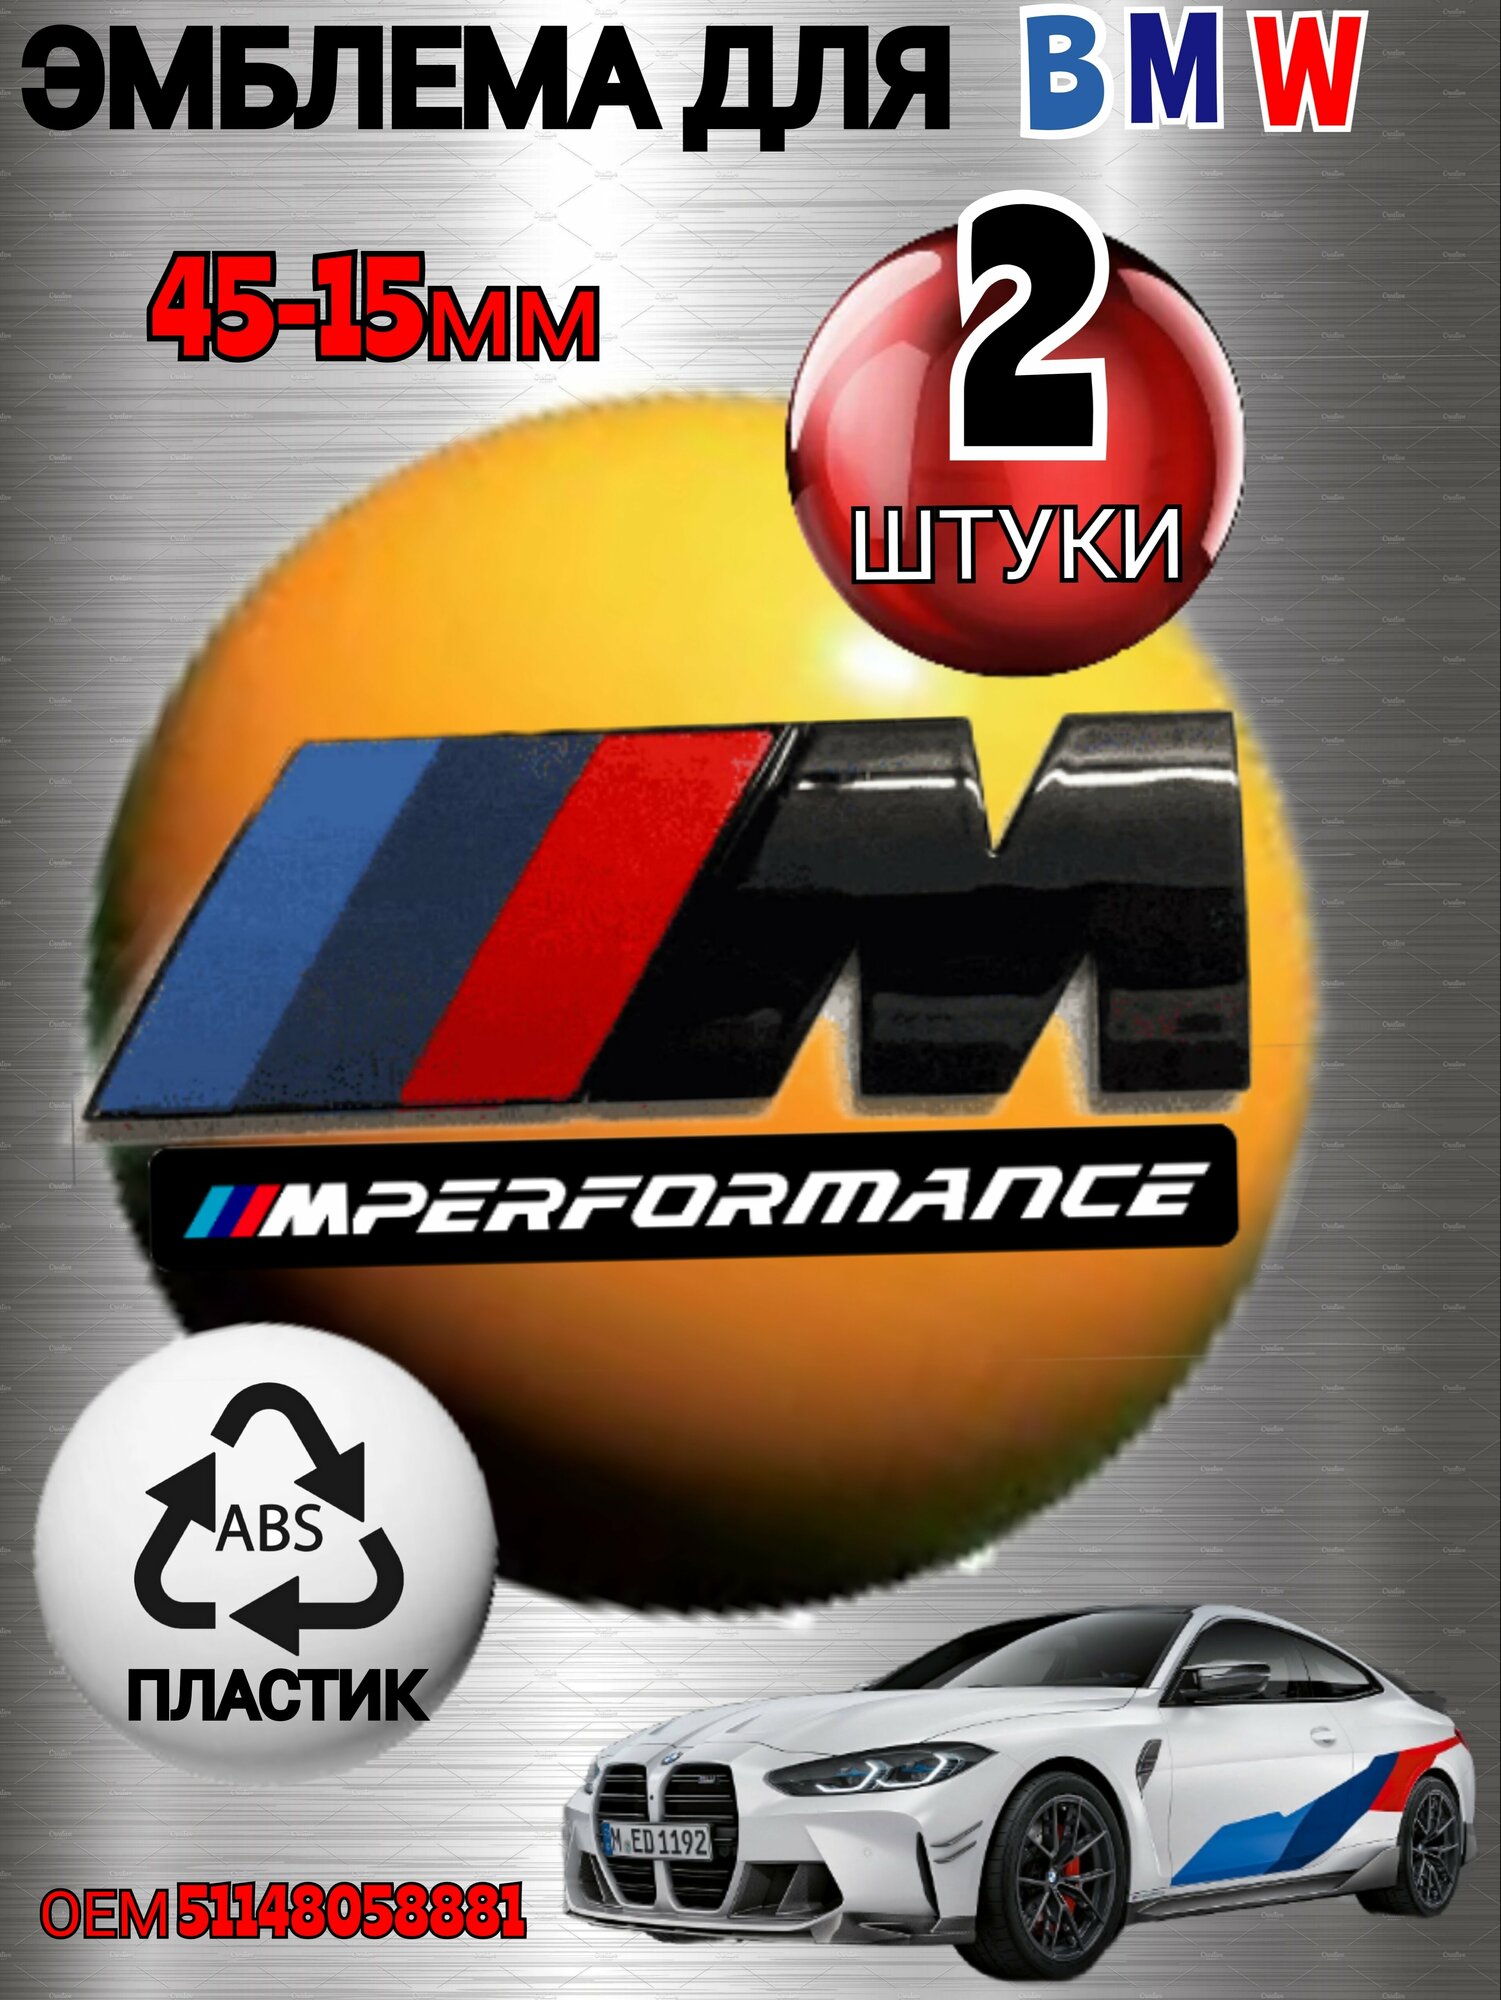 Шильдик (эмблема надпись) для автомобия BMW БМВ на крыло M-performance 45-15 мм цвет черный глянец 2 штуки